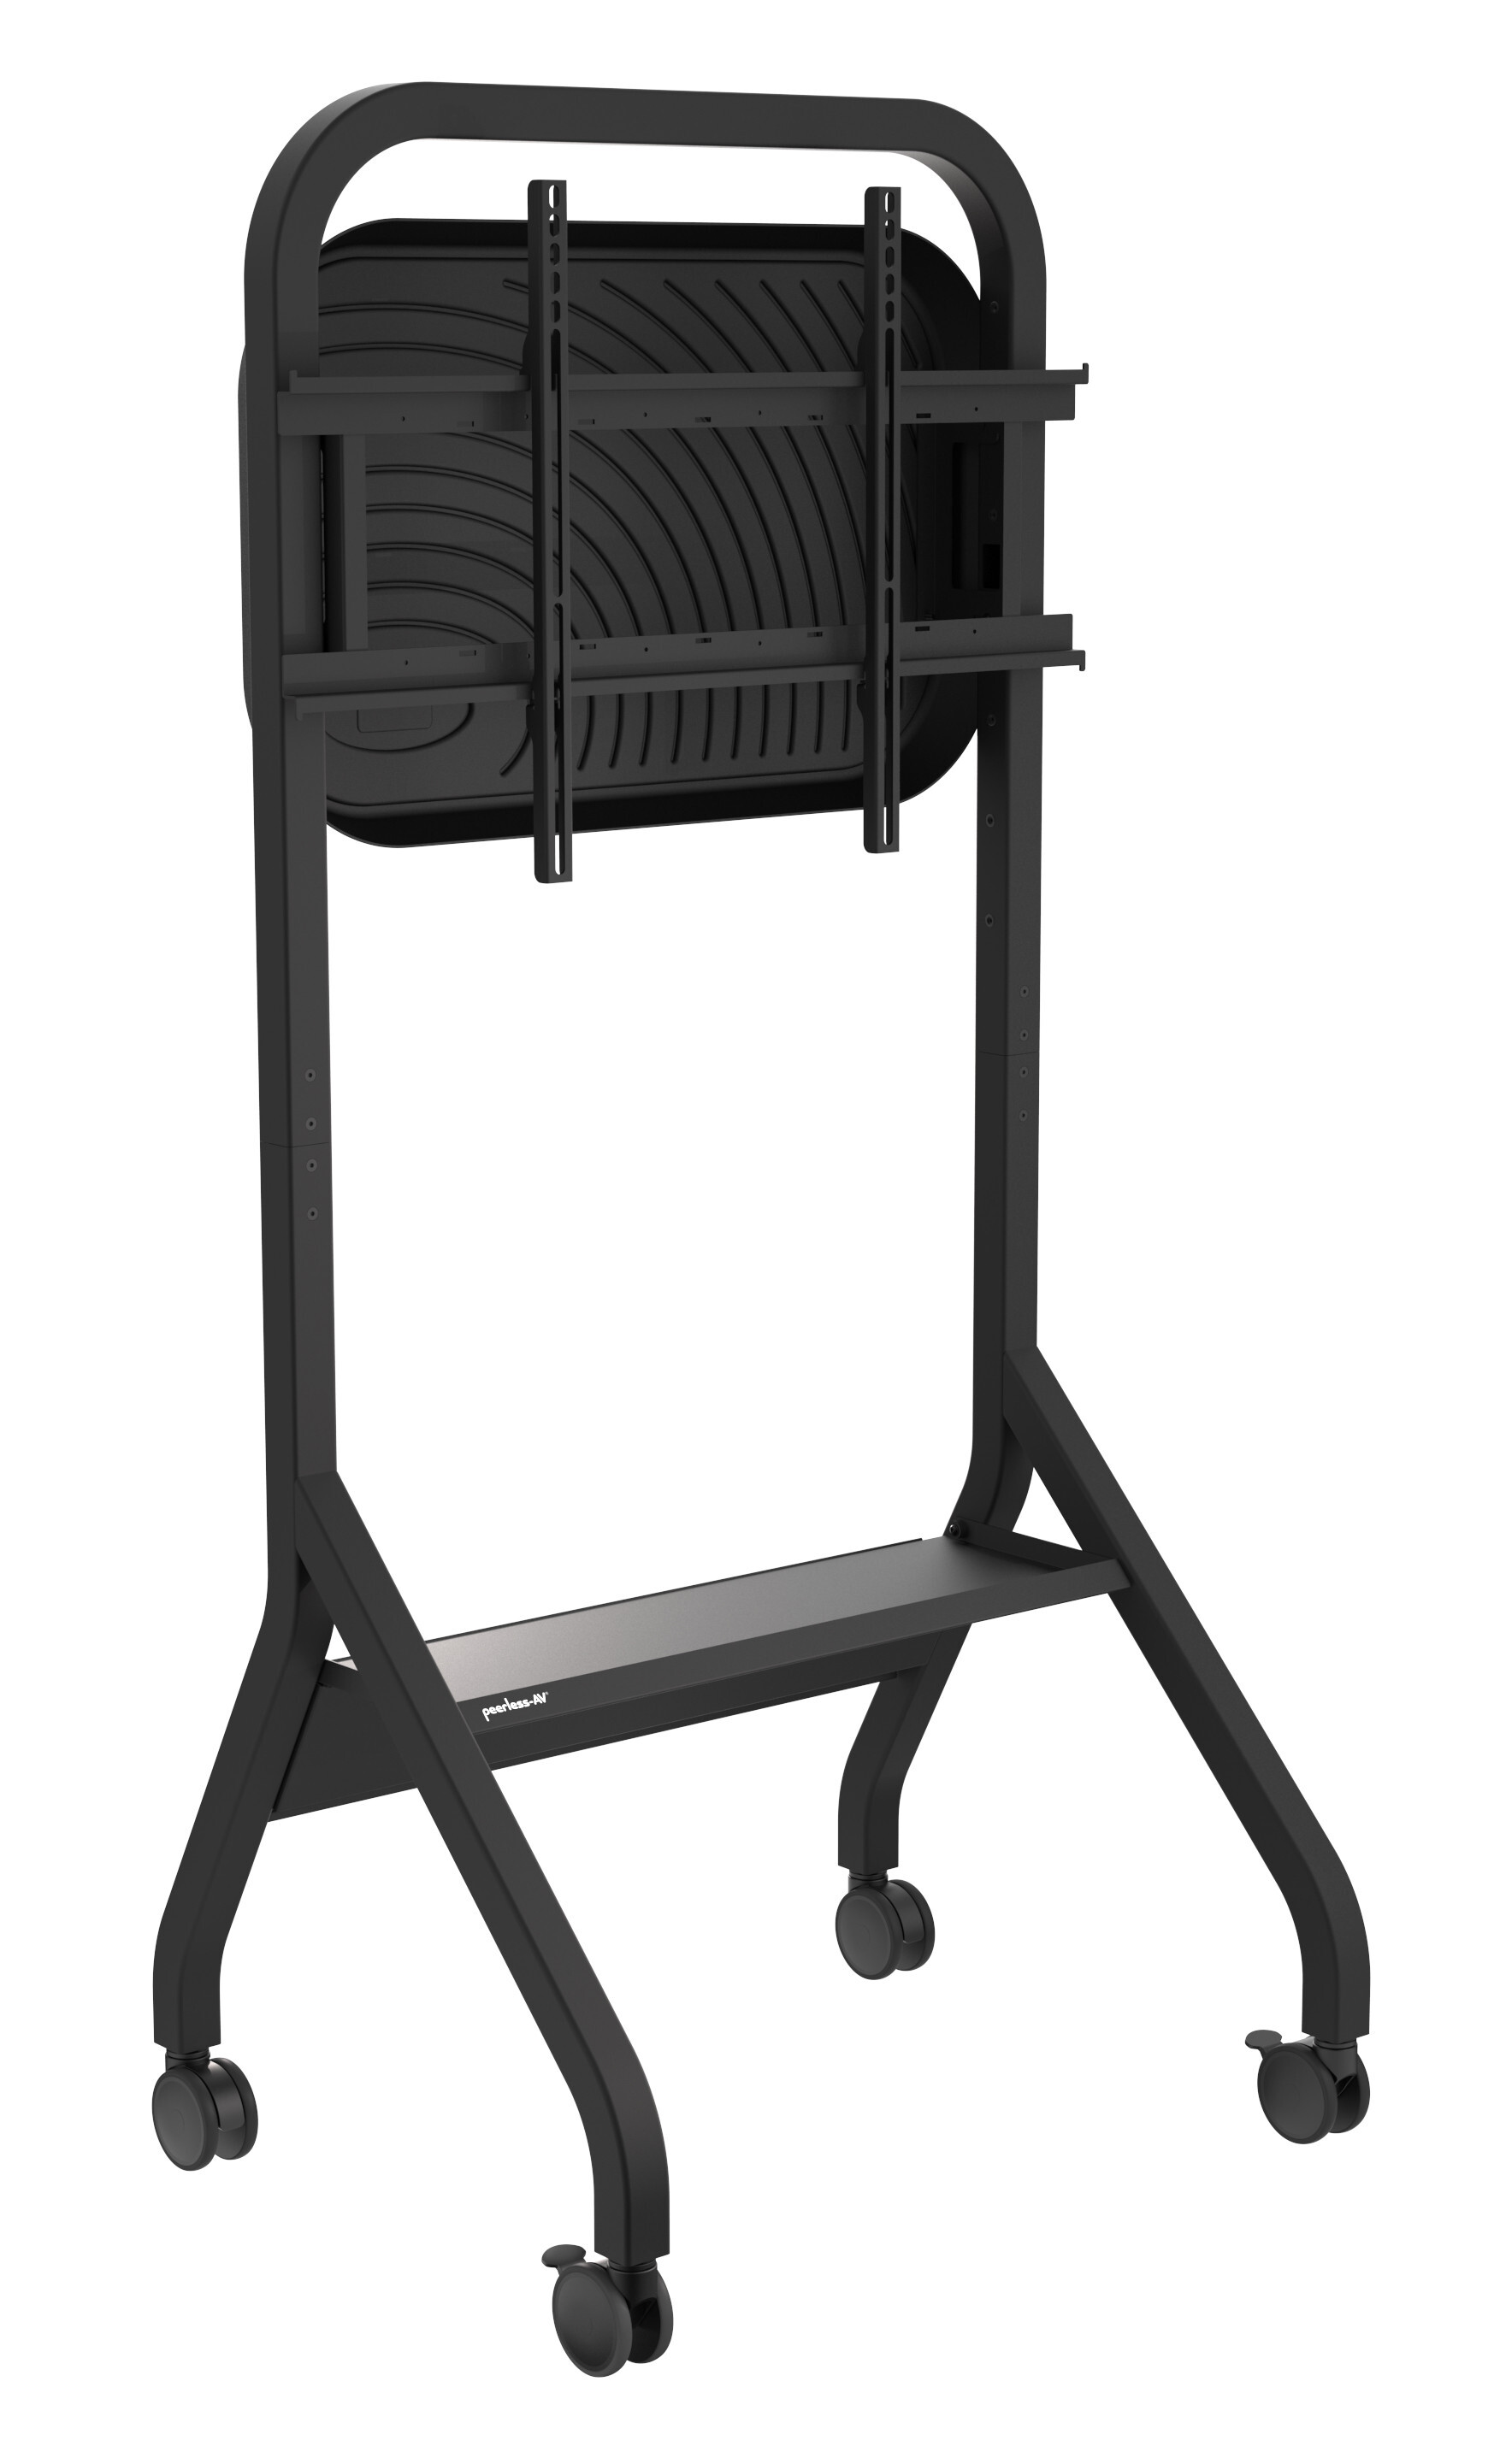 Peerless Peerless-AV SR898-EUK Trolley met legbord voor beeldschermen tot 110 inch/ tot 136kg/ tot VESA 900x600/ kleur zwart met achterpaneel